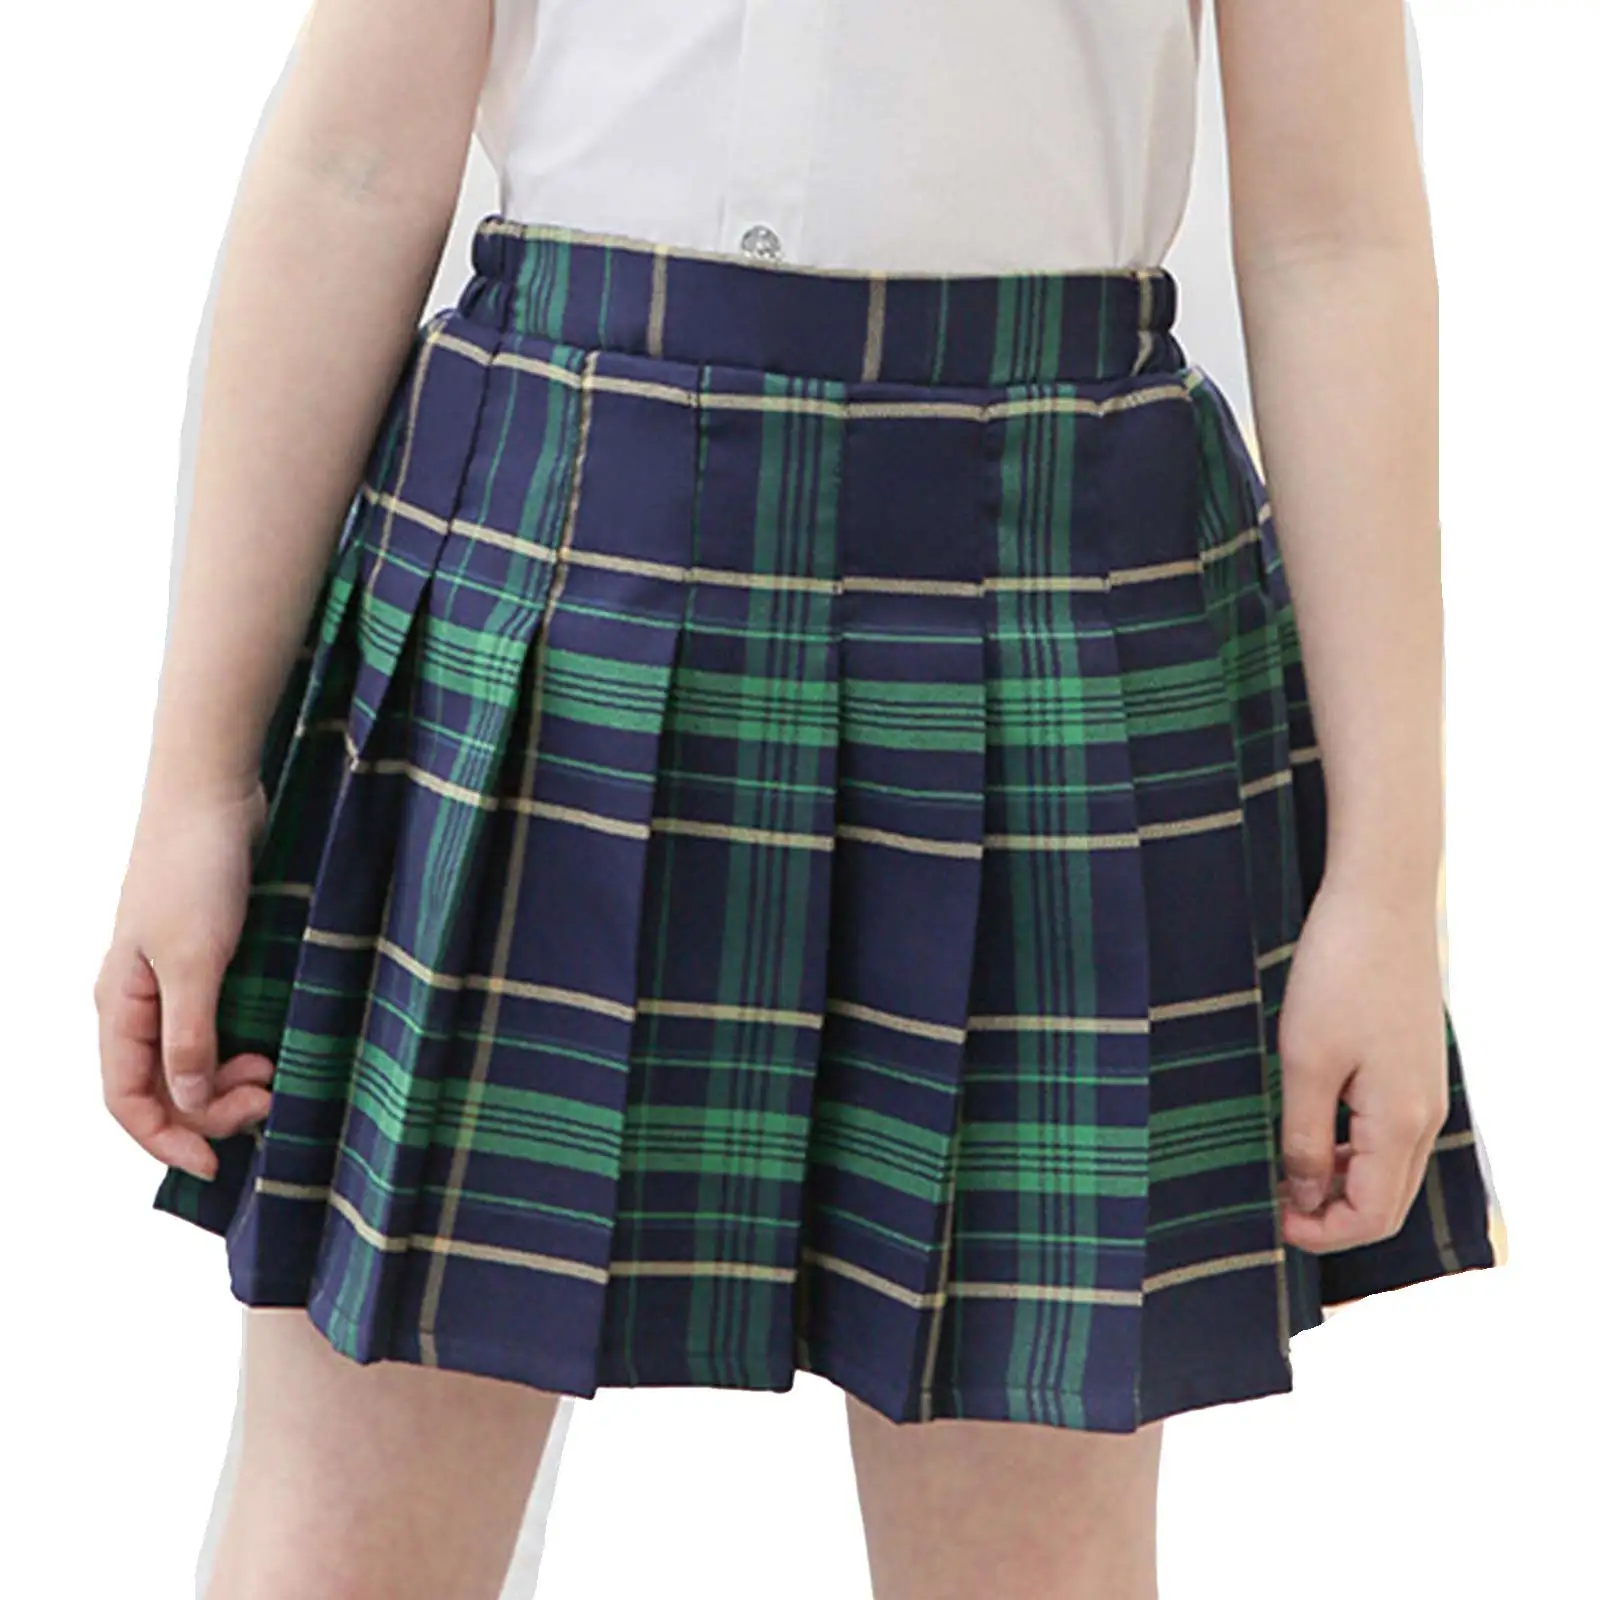 Ragazze pantaloncini pieghettati gonne elastico in vita a righe stampa scozzese studente uniforme scolastica giapponese gonna bambini Kawaii abbigliamento quotidiano